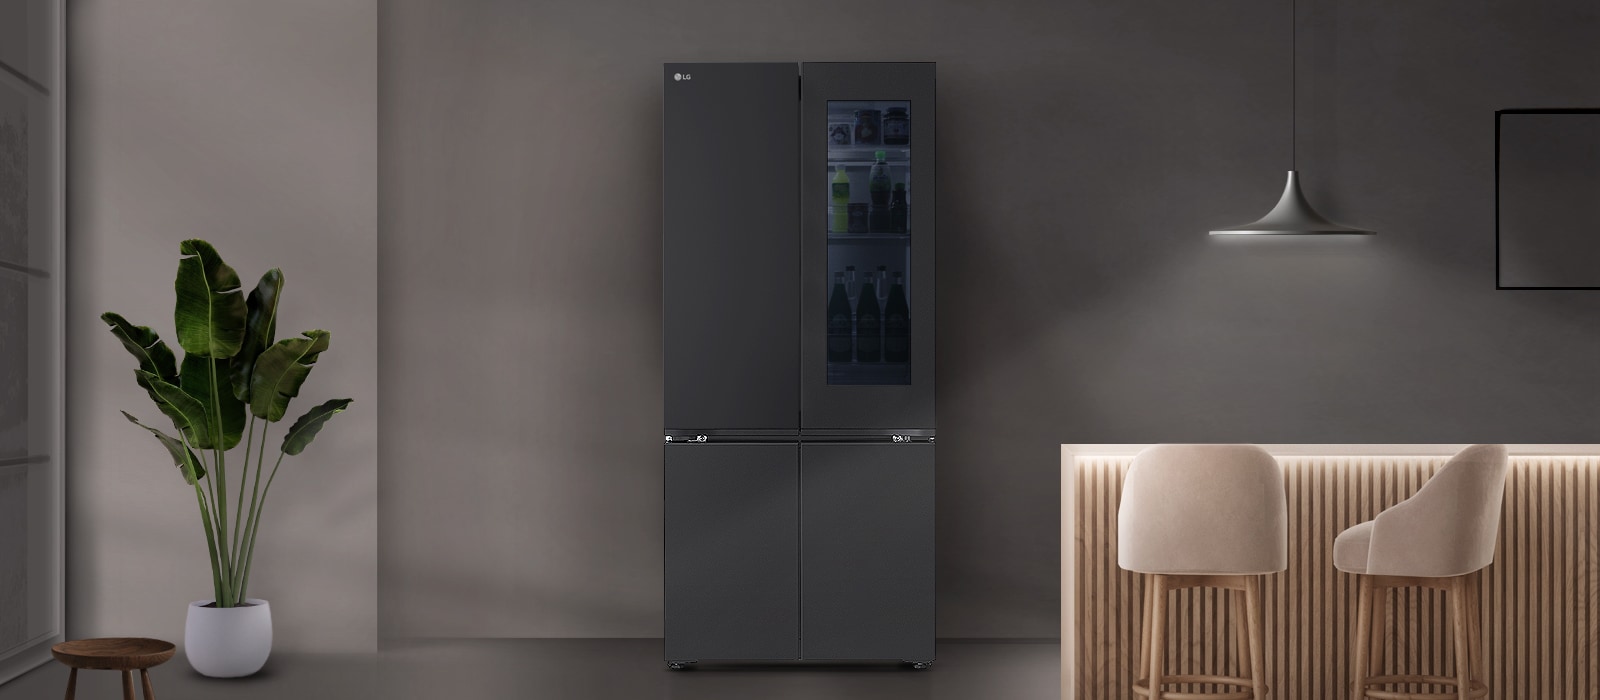 Tủ lạnh lg phân tích thói quen sử dụng để giảm thiểu công suất tiêu thụ không cần thiết vào các đêm ít sử dụng tủ lạnh.